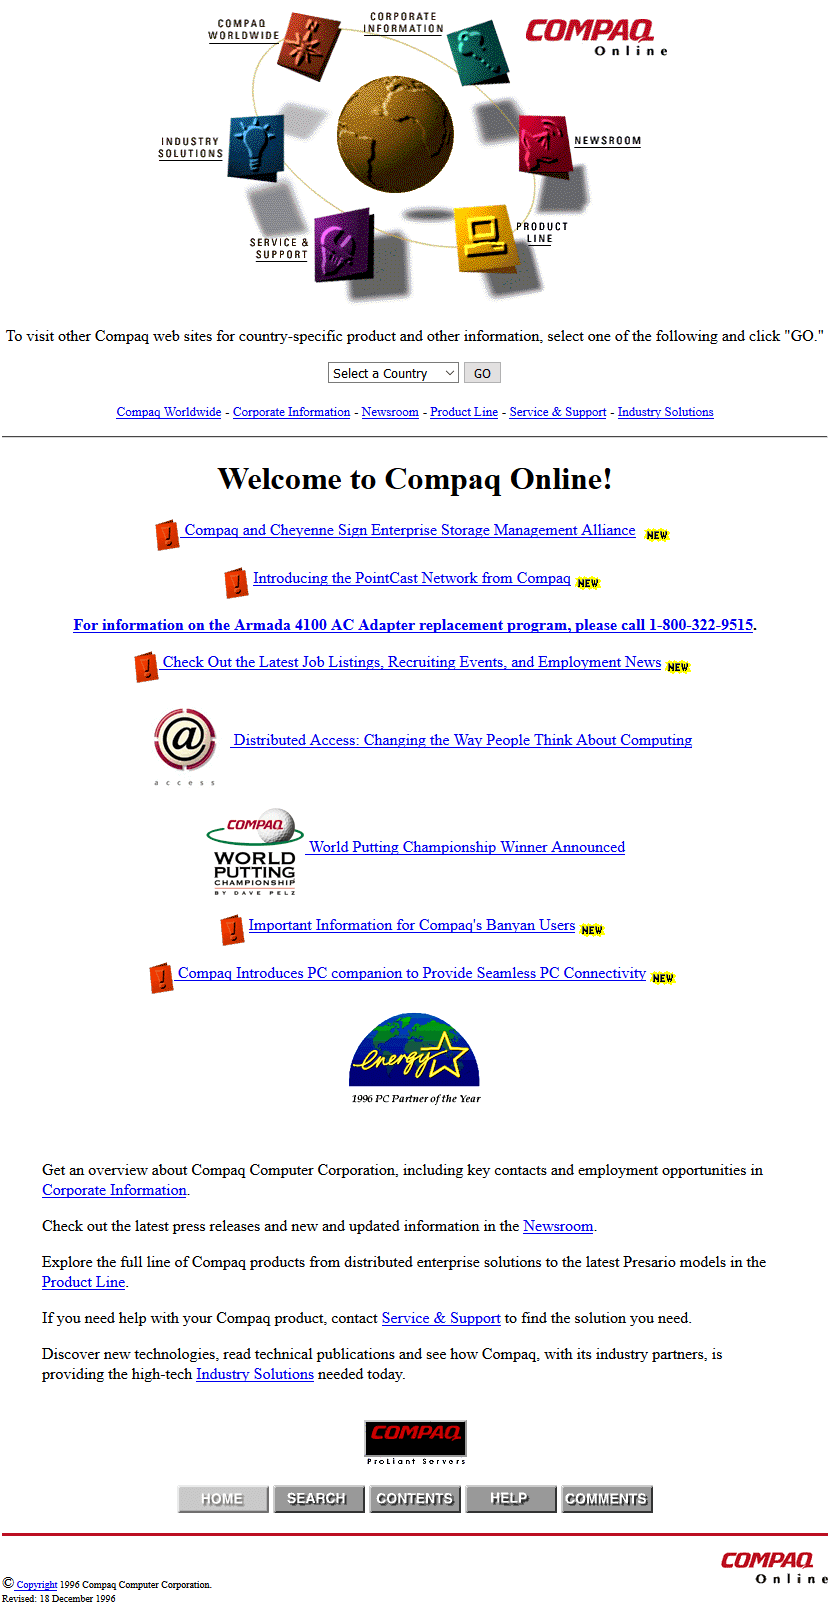 Compaq in 1996